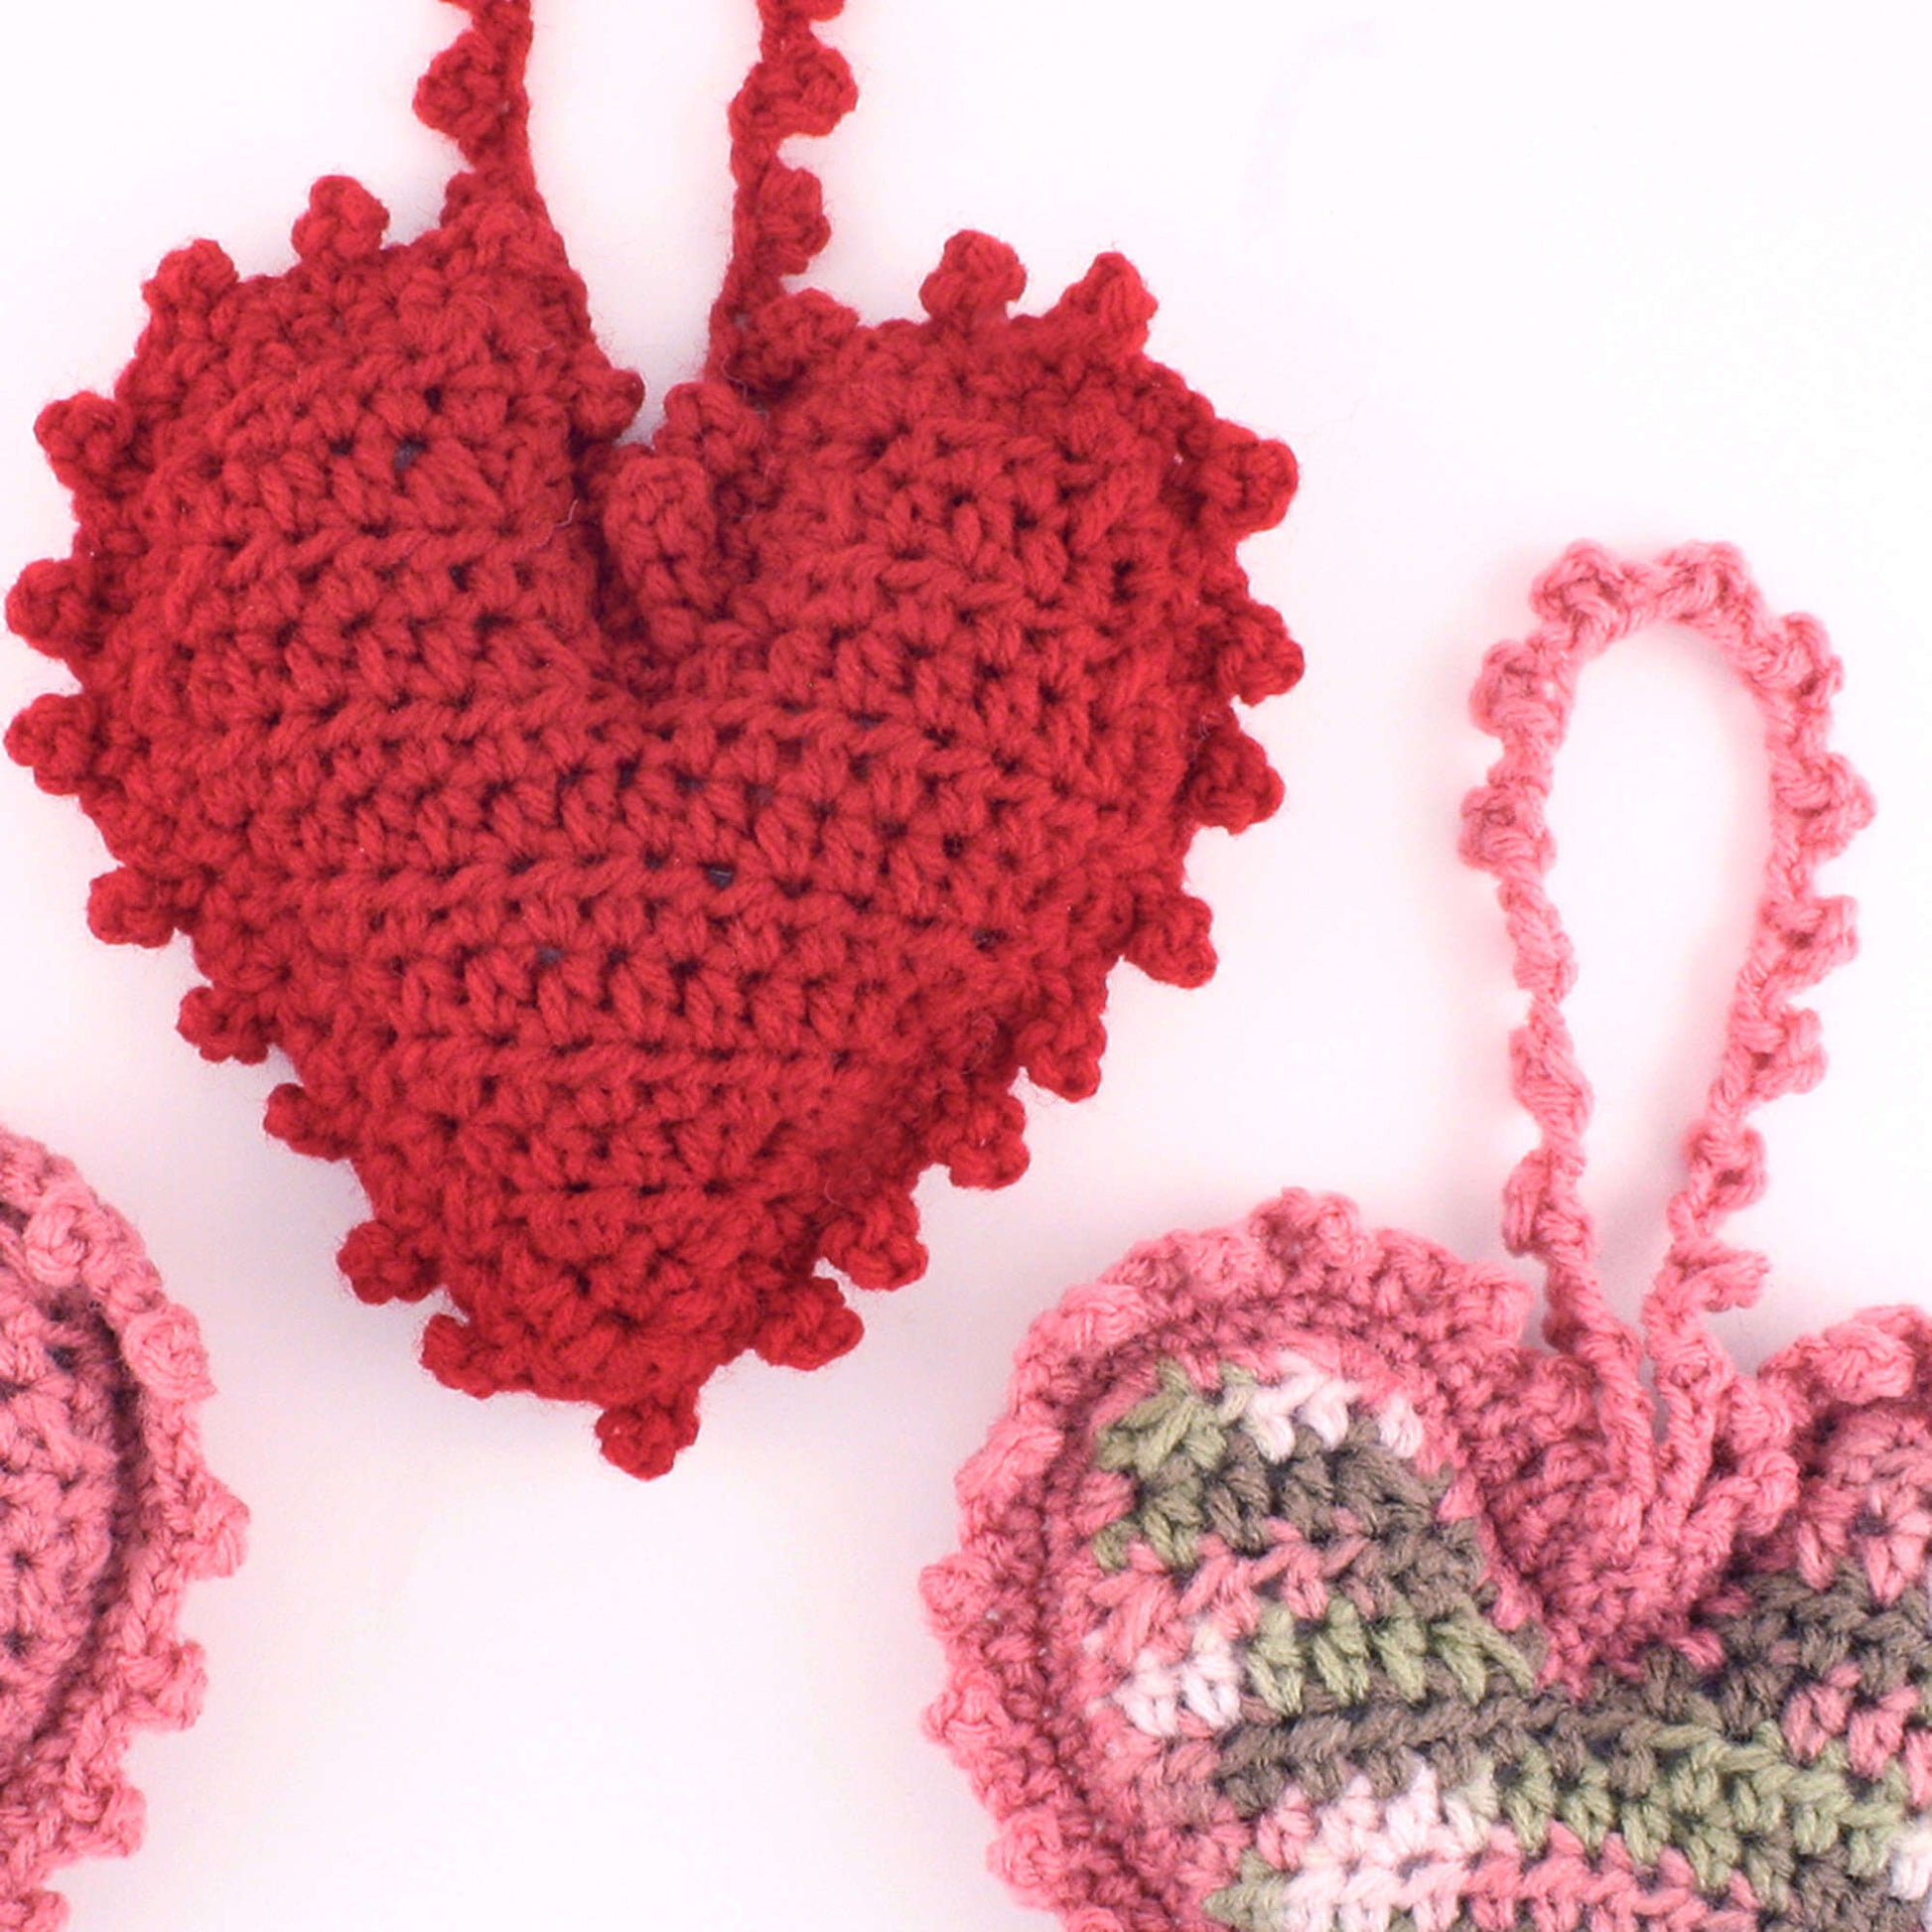 Free Red Heart Sweet Heart Sachet Crochet Pattern